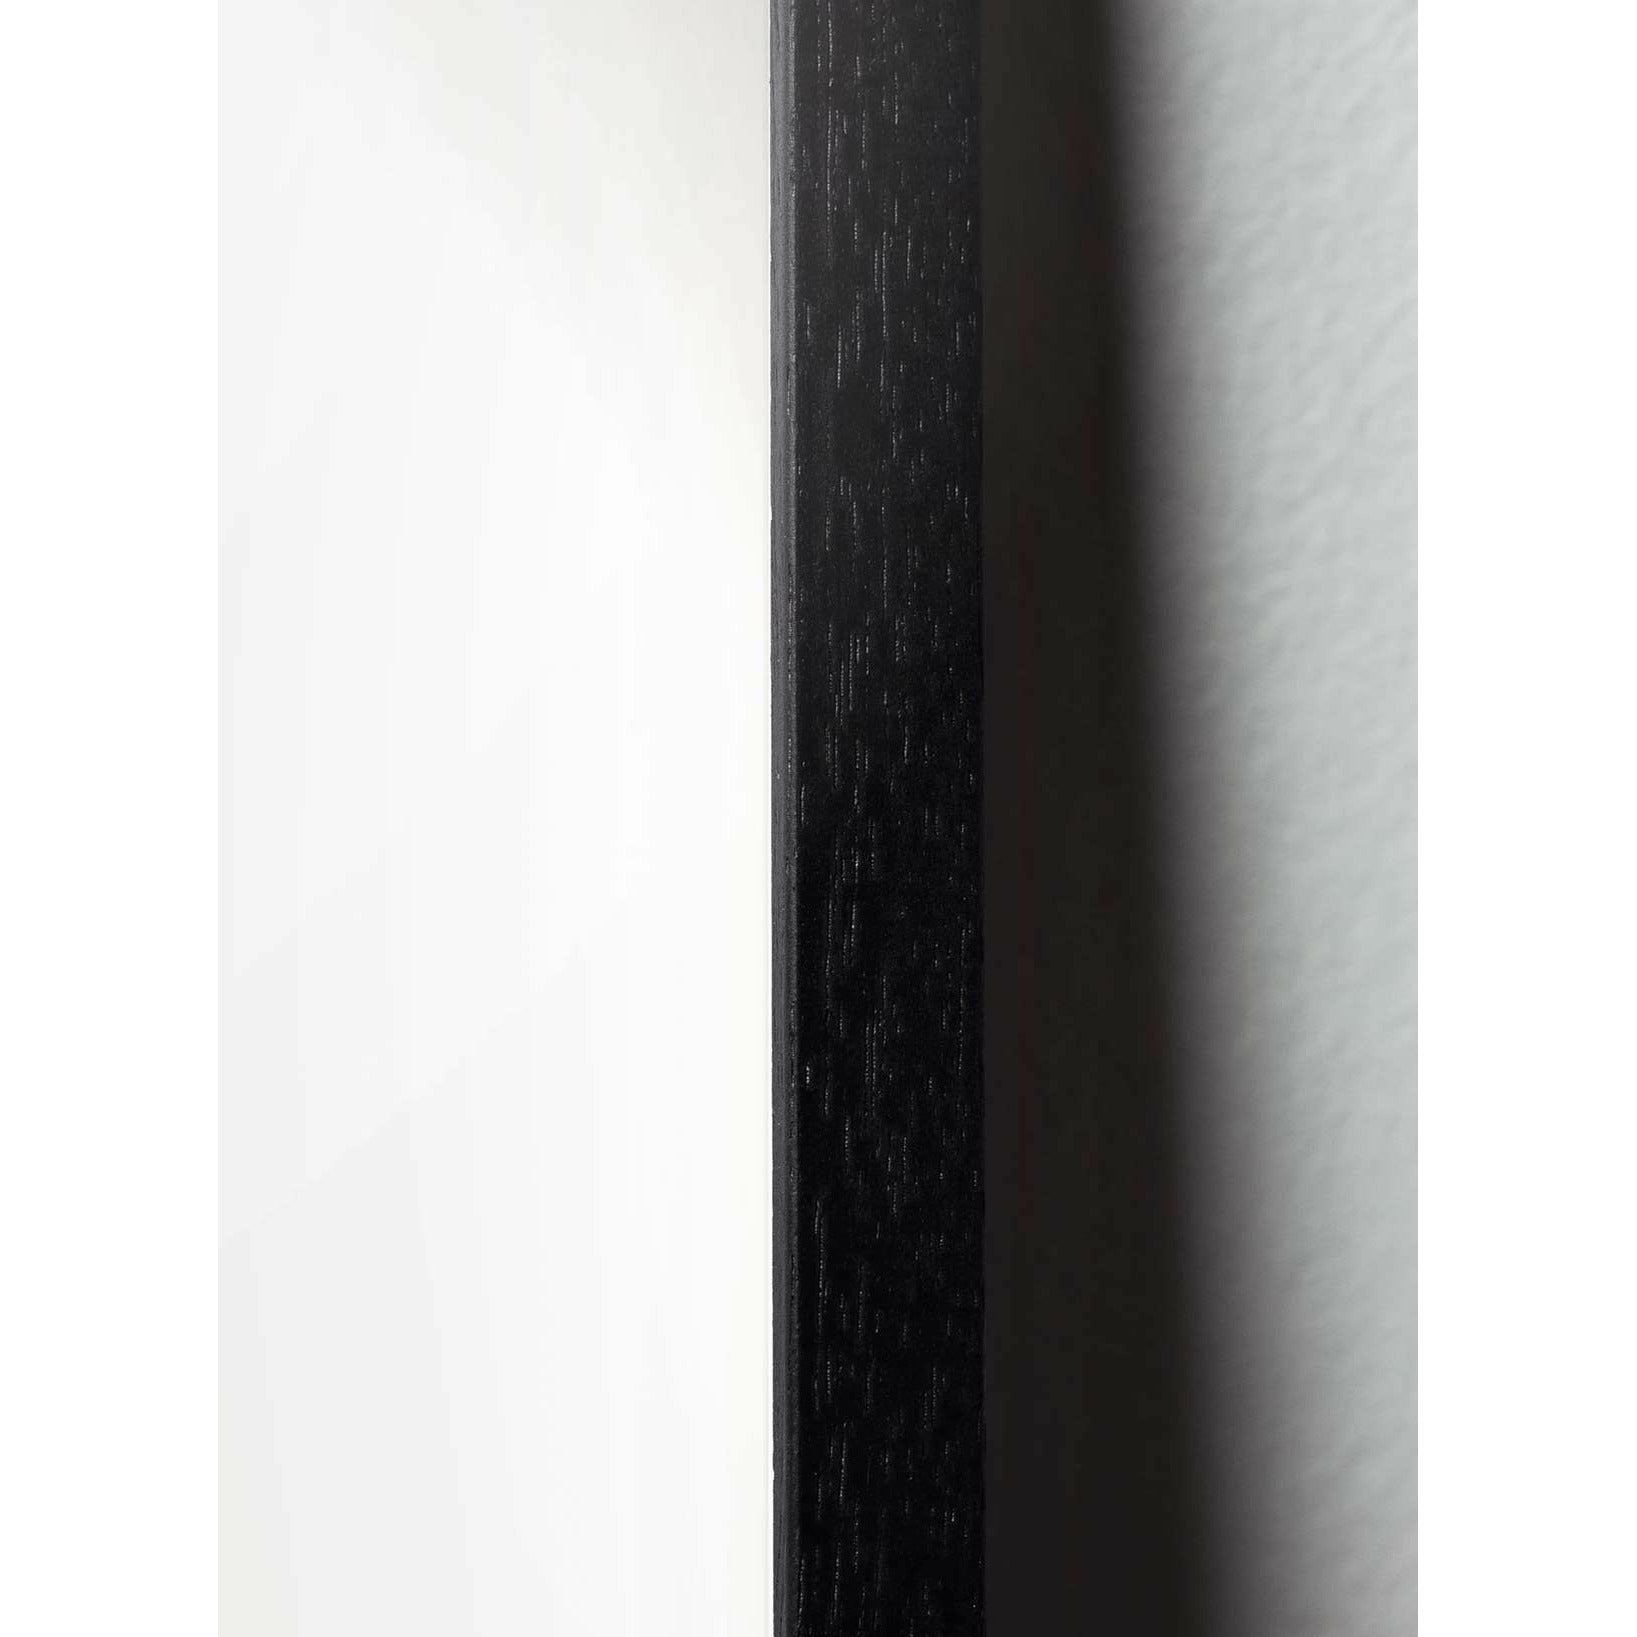 Póster de línea de caída de creación, marco en madera lacada negra de 30x40 cm, fondo azul